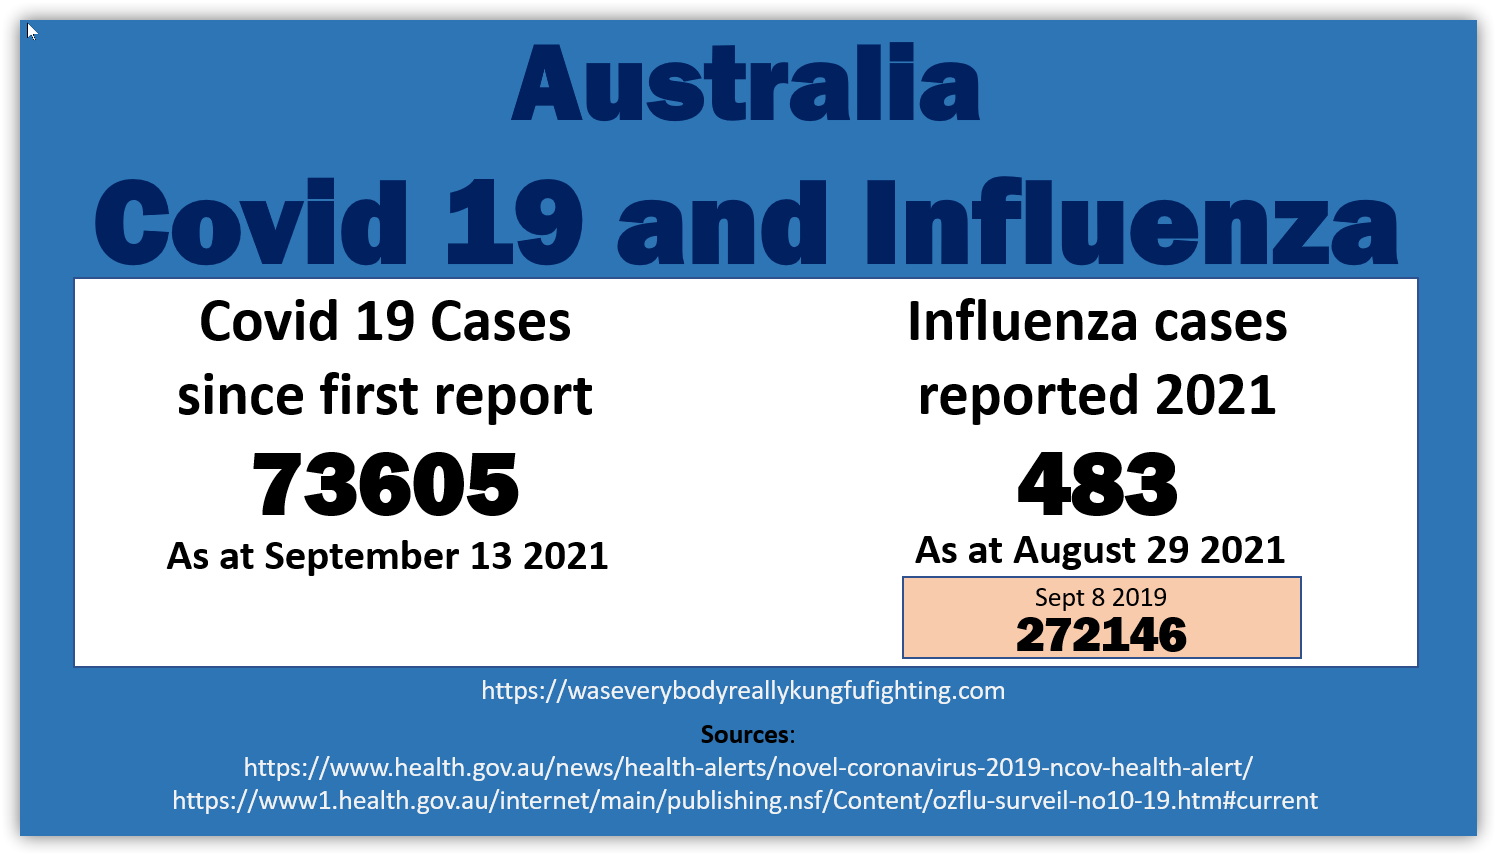 Covid influenza compared Australia